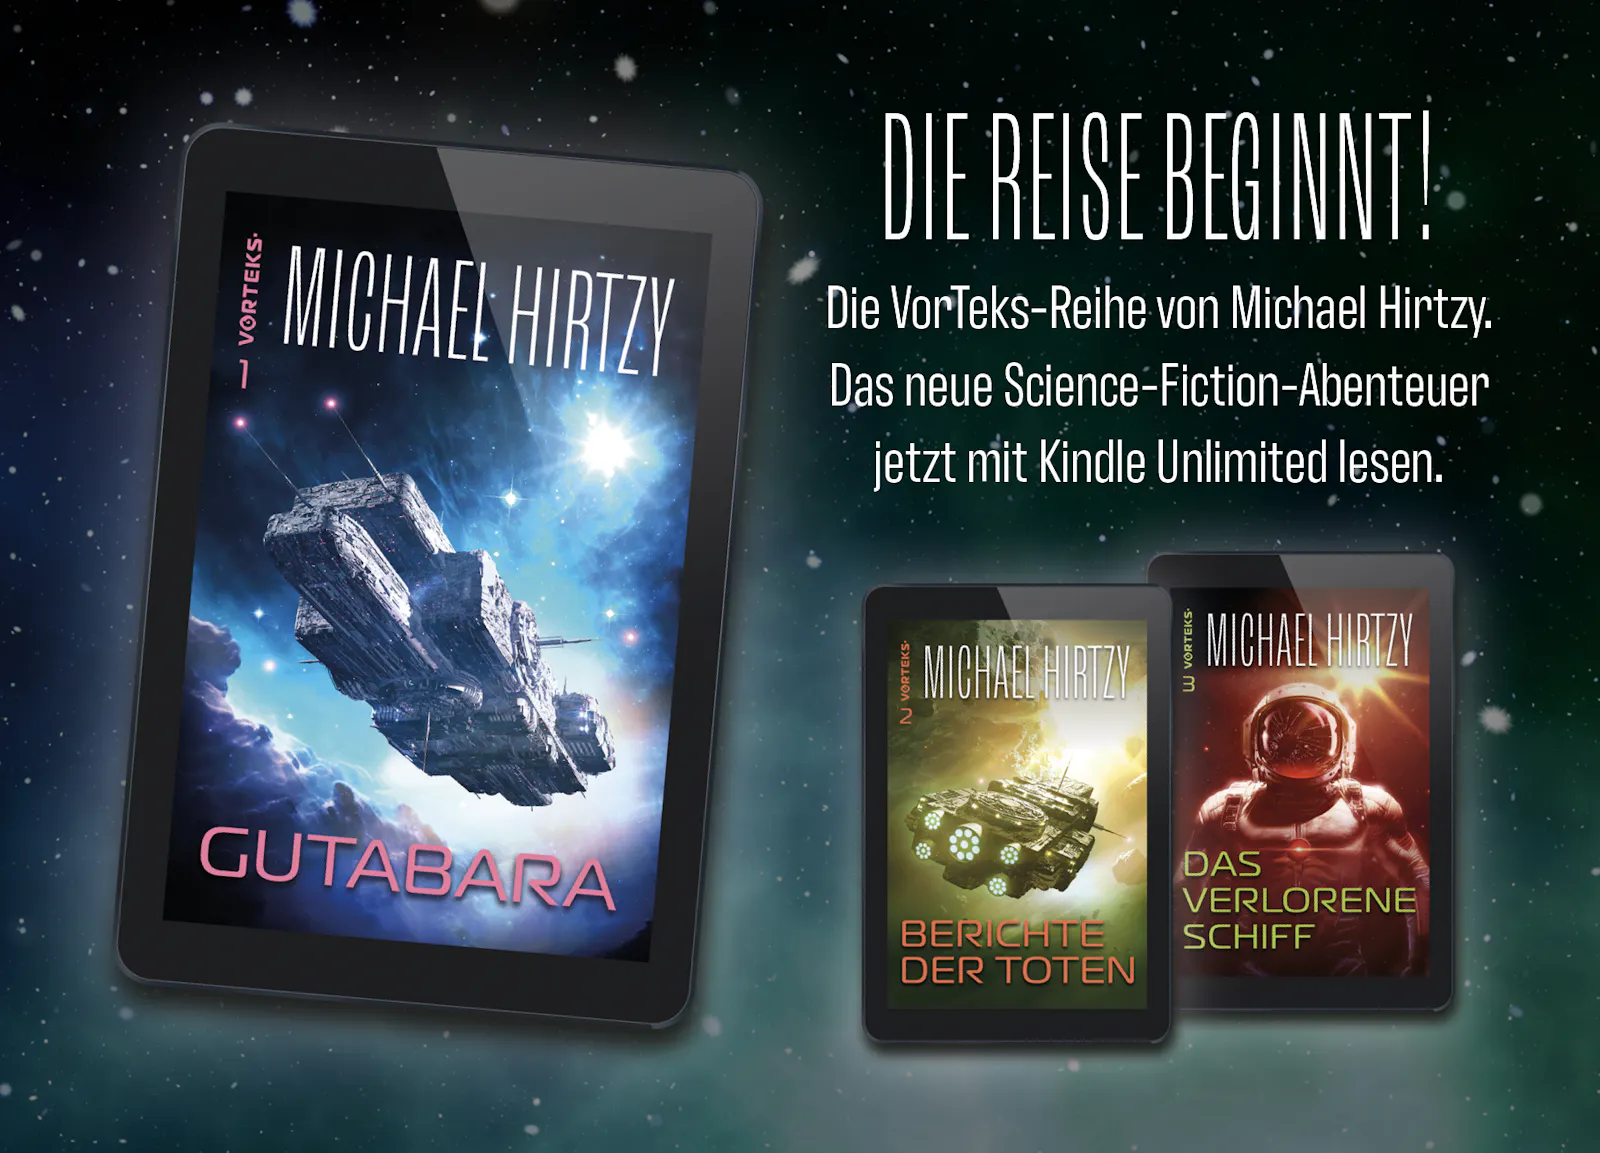 Auf dunklem Sternenhintergrund sind drei E-Reader zu sehen, welche die Cover der ersten drei Bände der VorTeks-Reihe von Michael Hirtzy zeigen. Außerdem der Text: Die Reise beginnt! Die VorTeks-Reihe von Michael Hirtzy. Das neue Science-Fiction-Abenteuer jetzt mit Kindle Unlimited lesen.